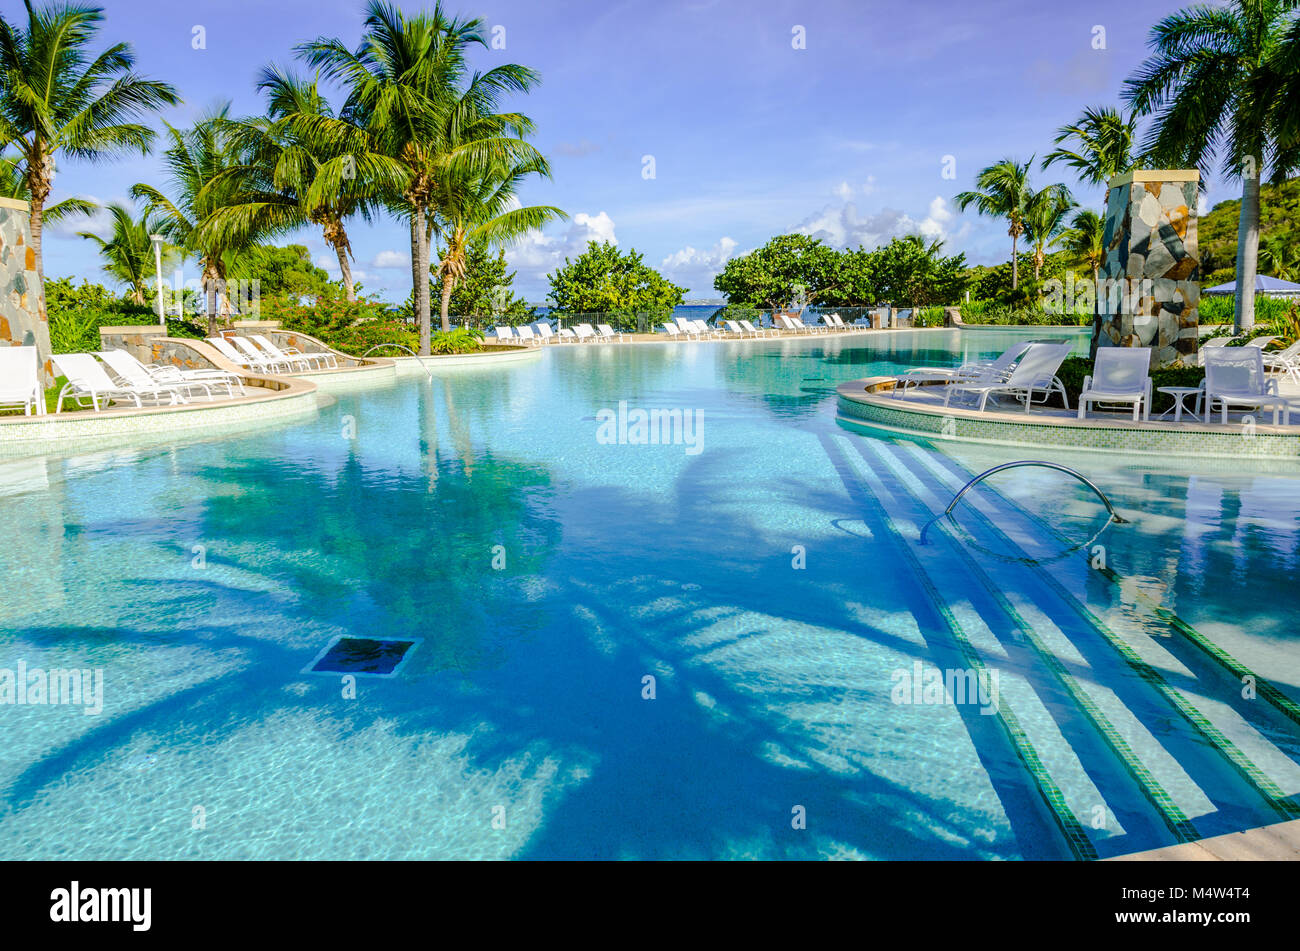 L'une des plus importantes des Caraïbes, cette immense piscine vue sur une plage de sable blanc. La piscine d''eau salée est entourée de chaises longues blanc et grand pa Banque D'Images